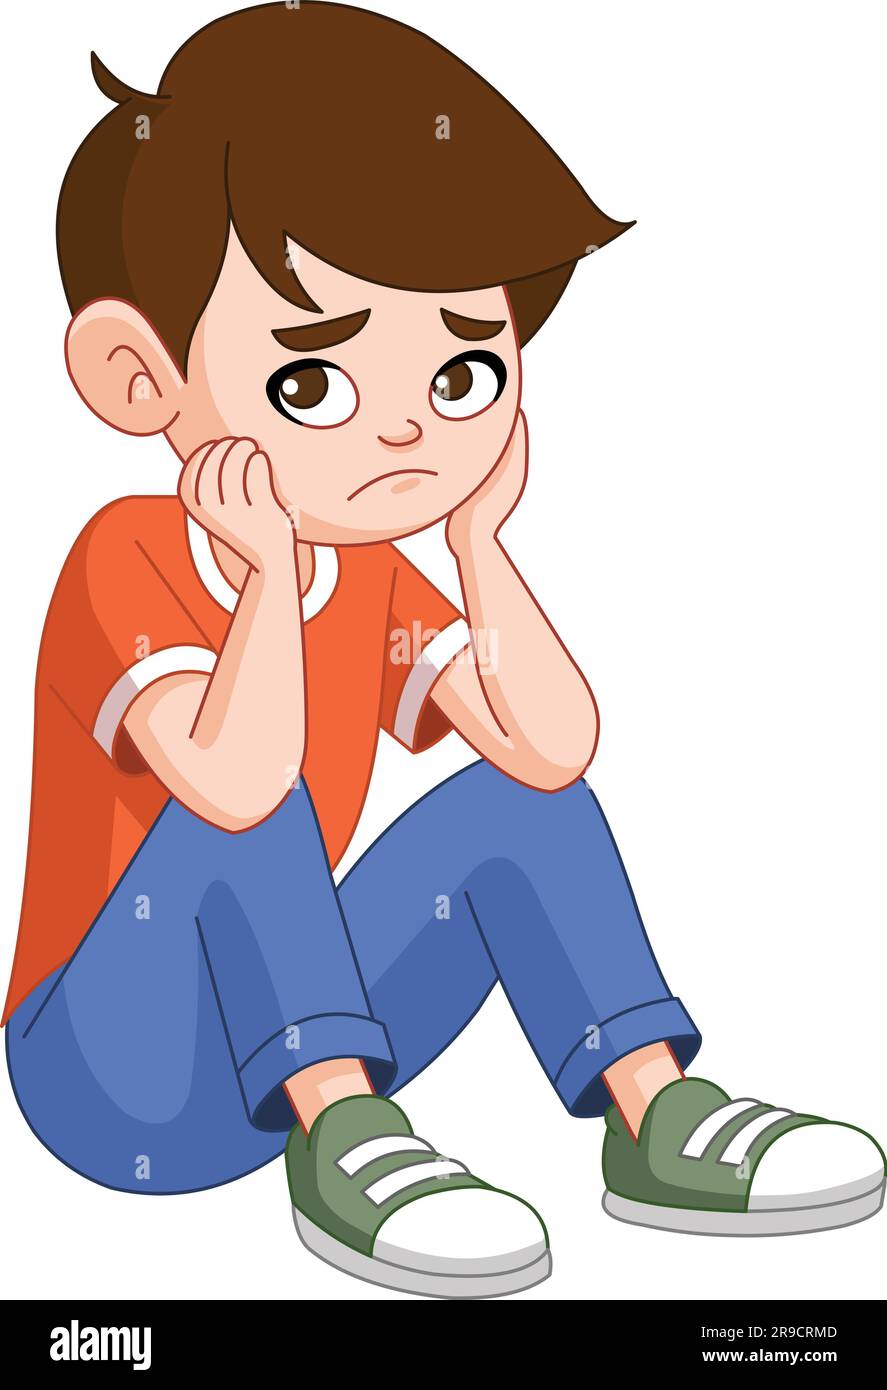 Ein Junge mit einem traurigen oder nachdenklichen Gesichtsausdruck sitzt auf dem Boden Stock Vektor